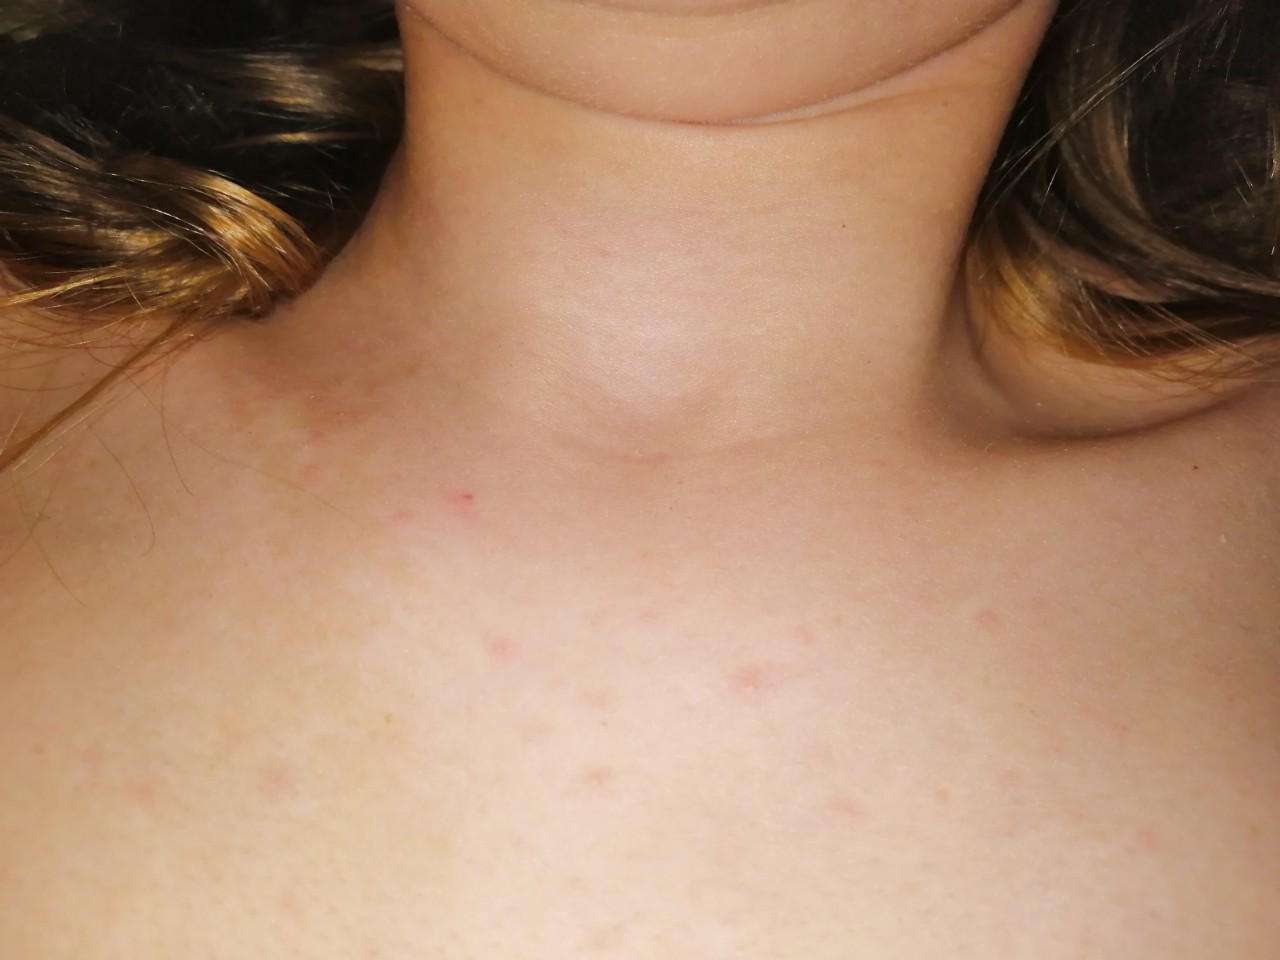 раздражение на коже груди у женщин фото 85